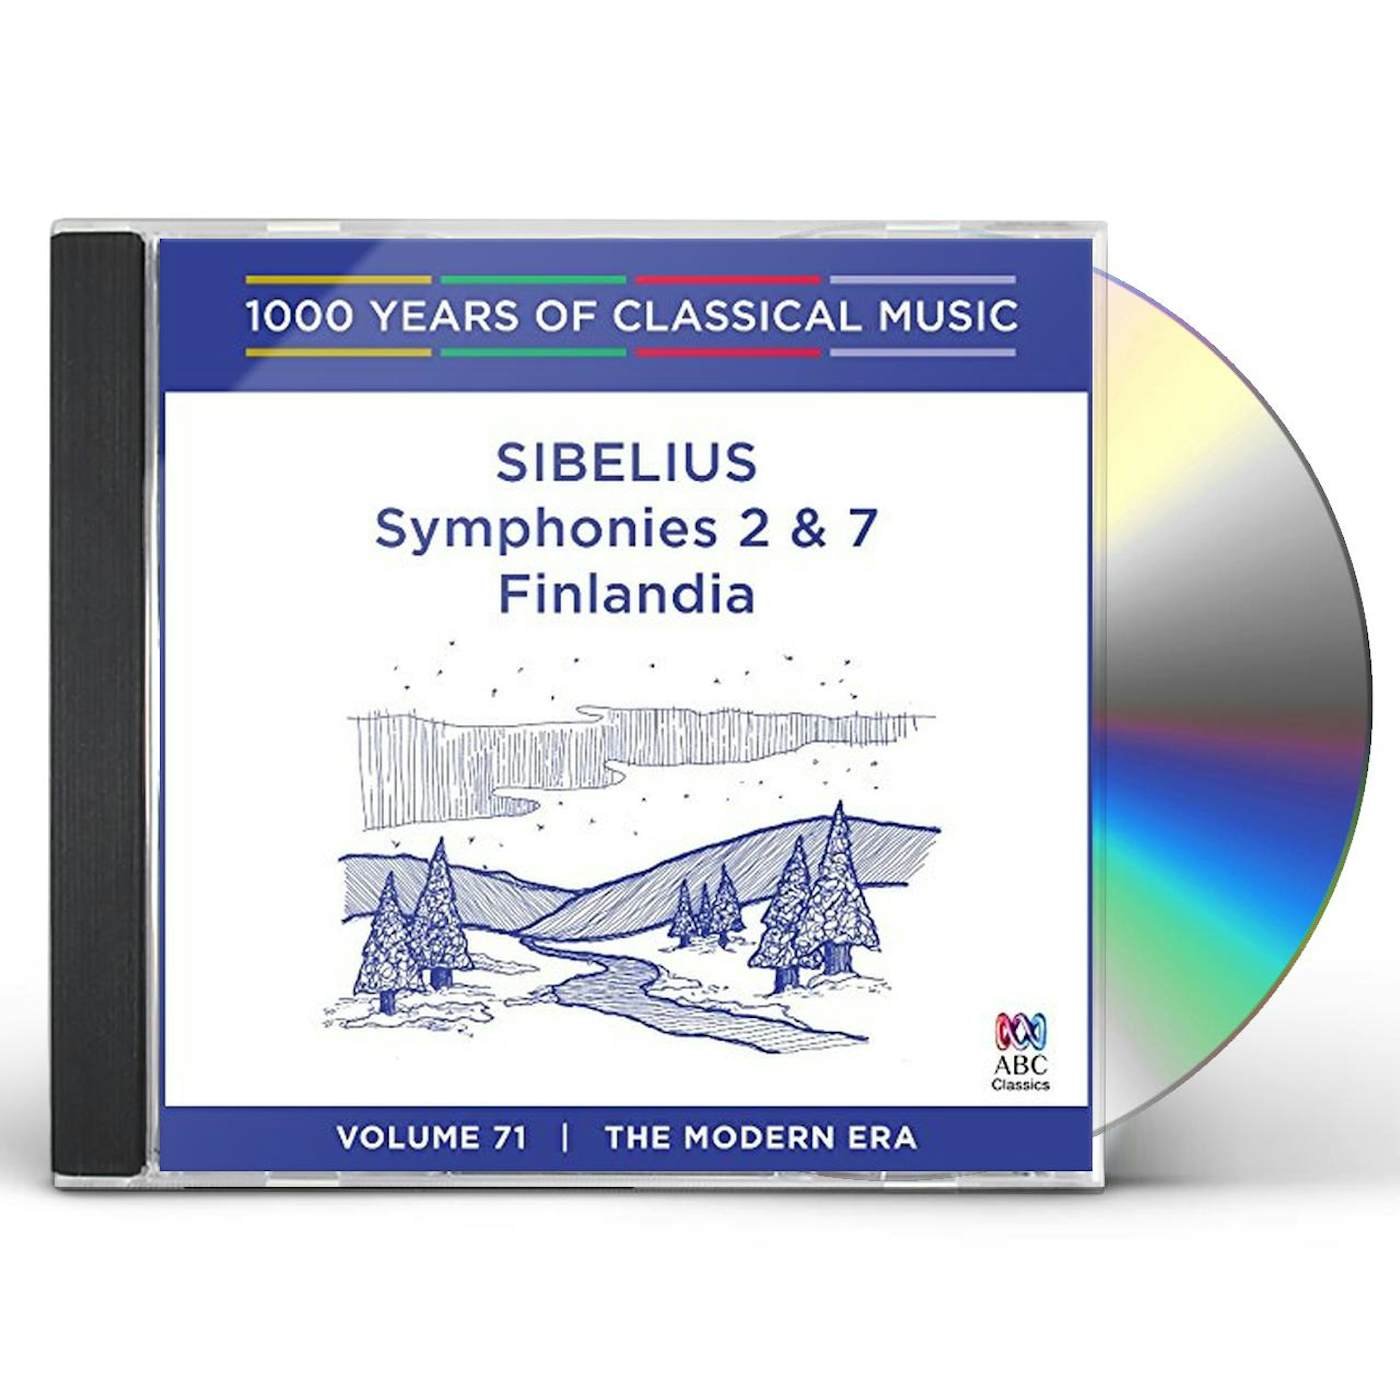 SIBELIUS: SYMPHONIES 2 & 7 / FINLANDIA CD